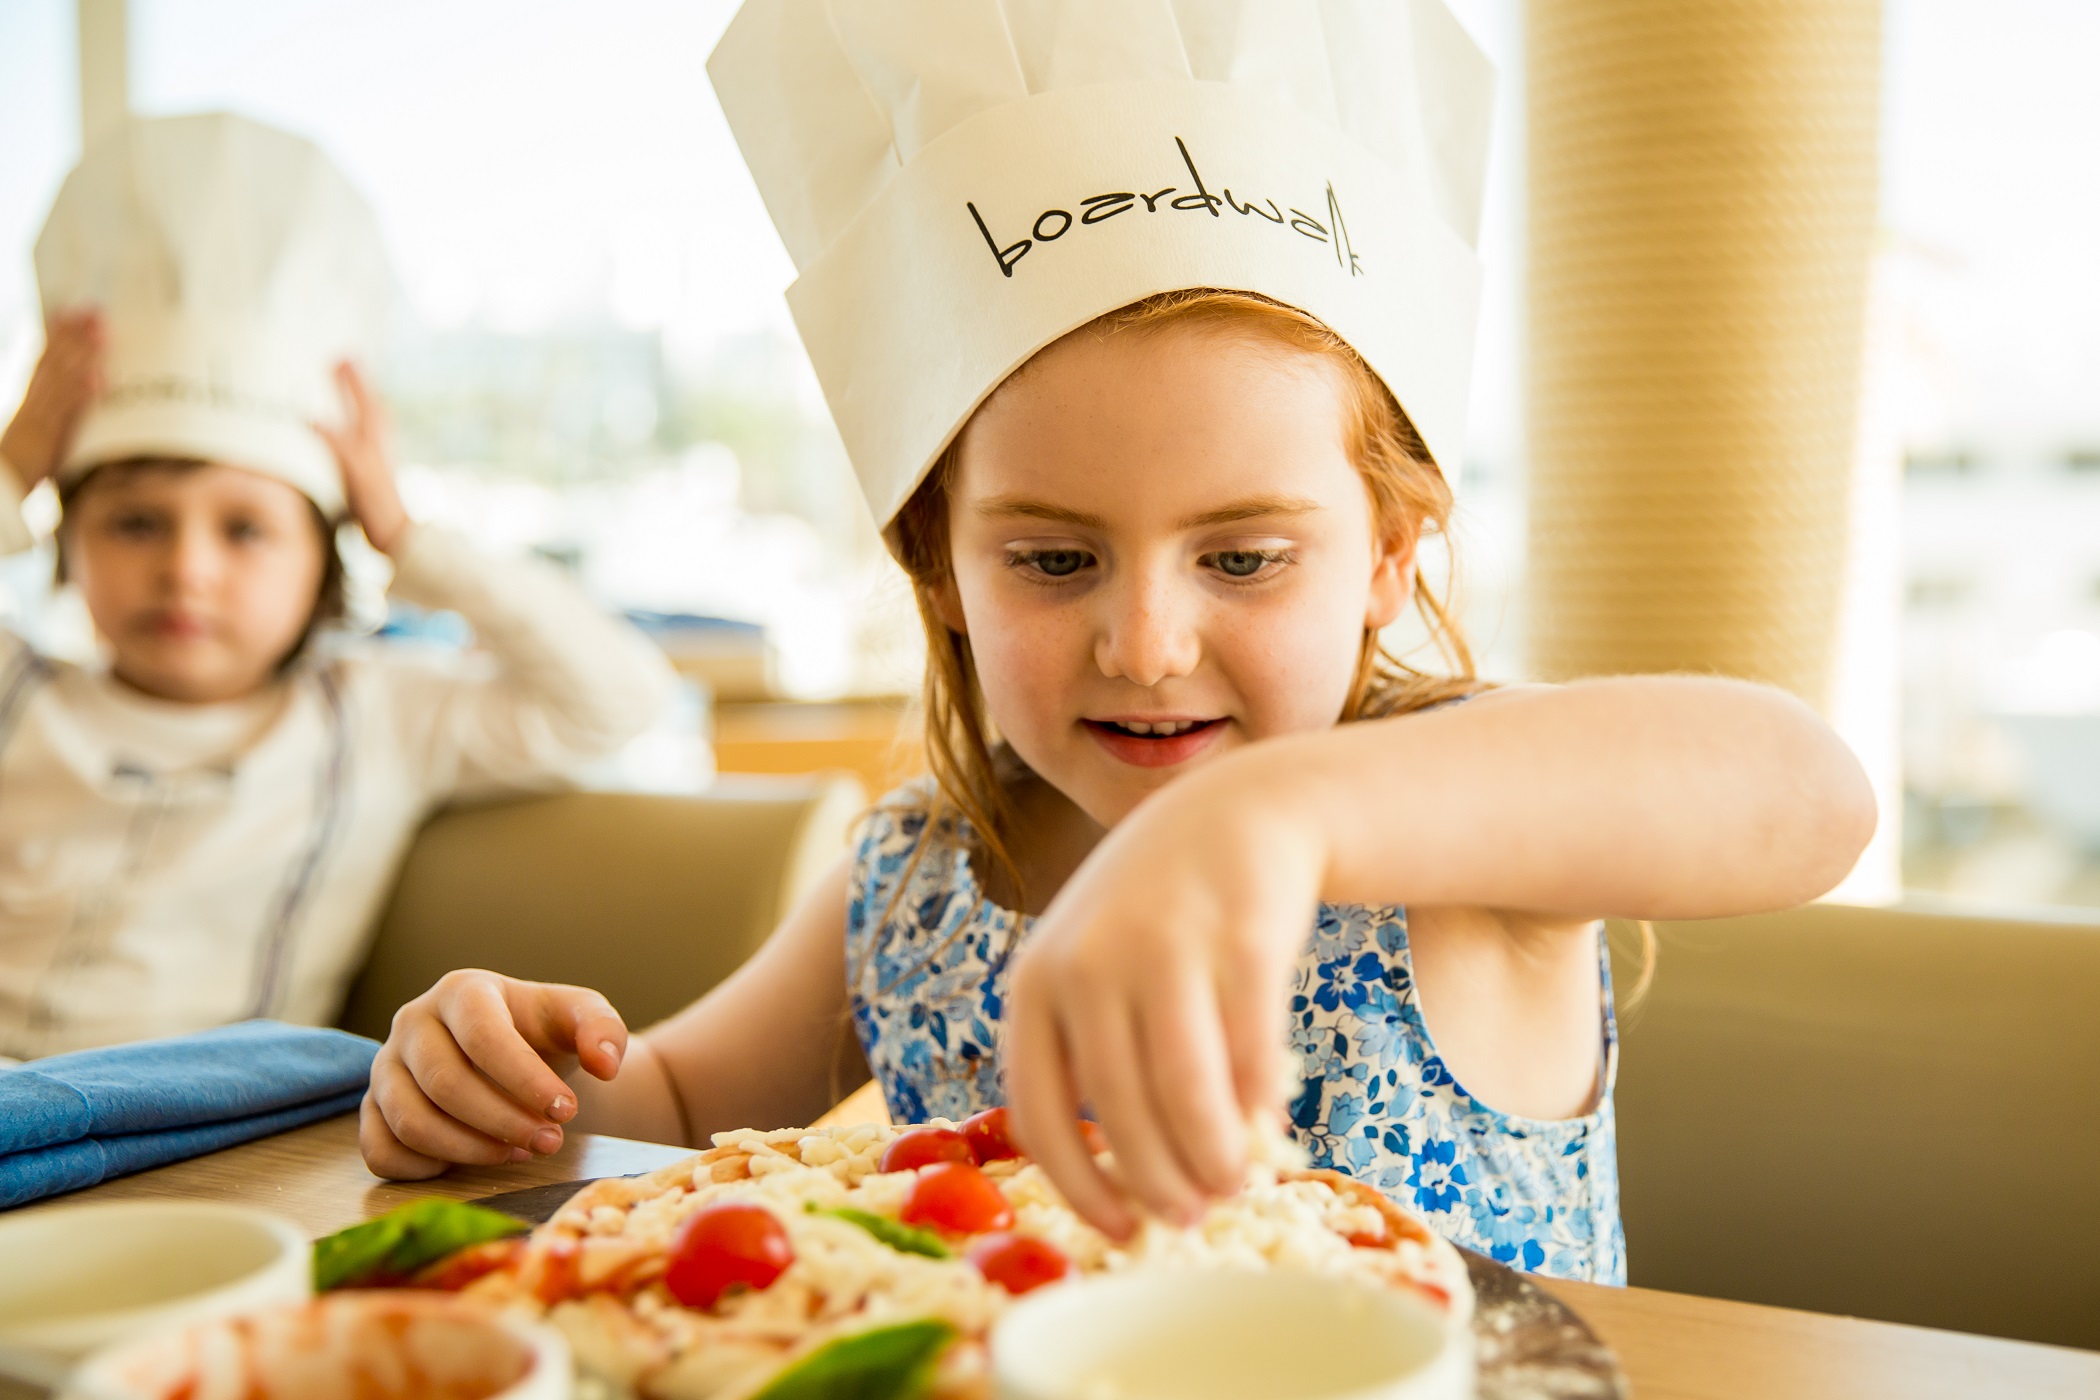 فرصة خاصة بالأطفال لإعداد البيتزا في مطعم بوردووك